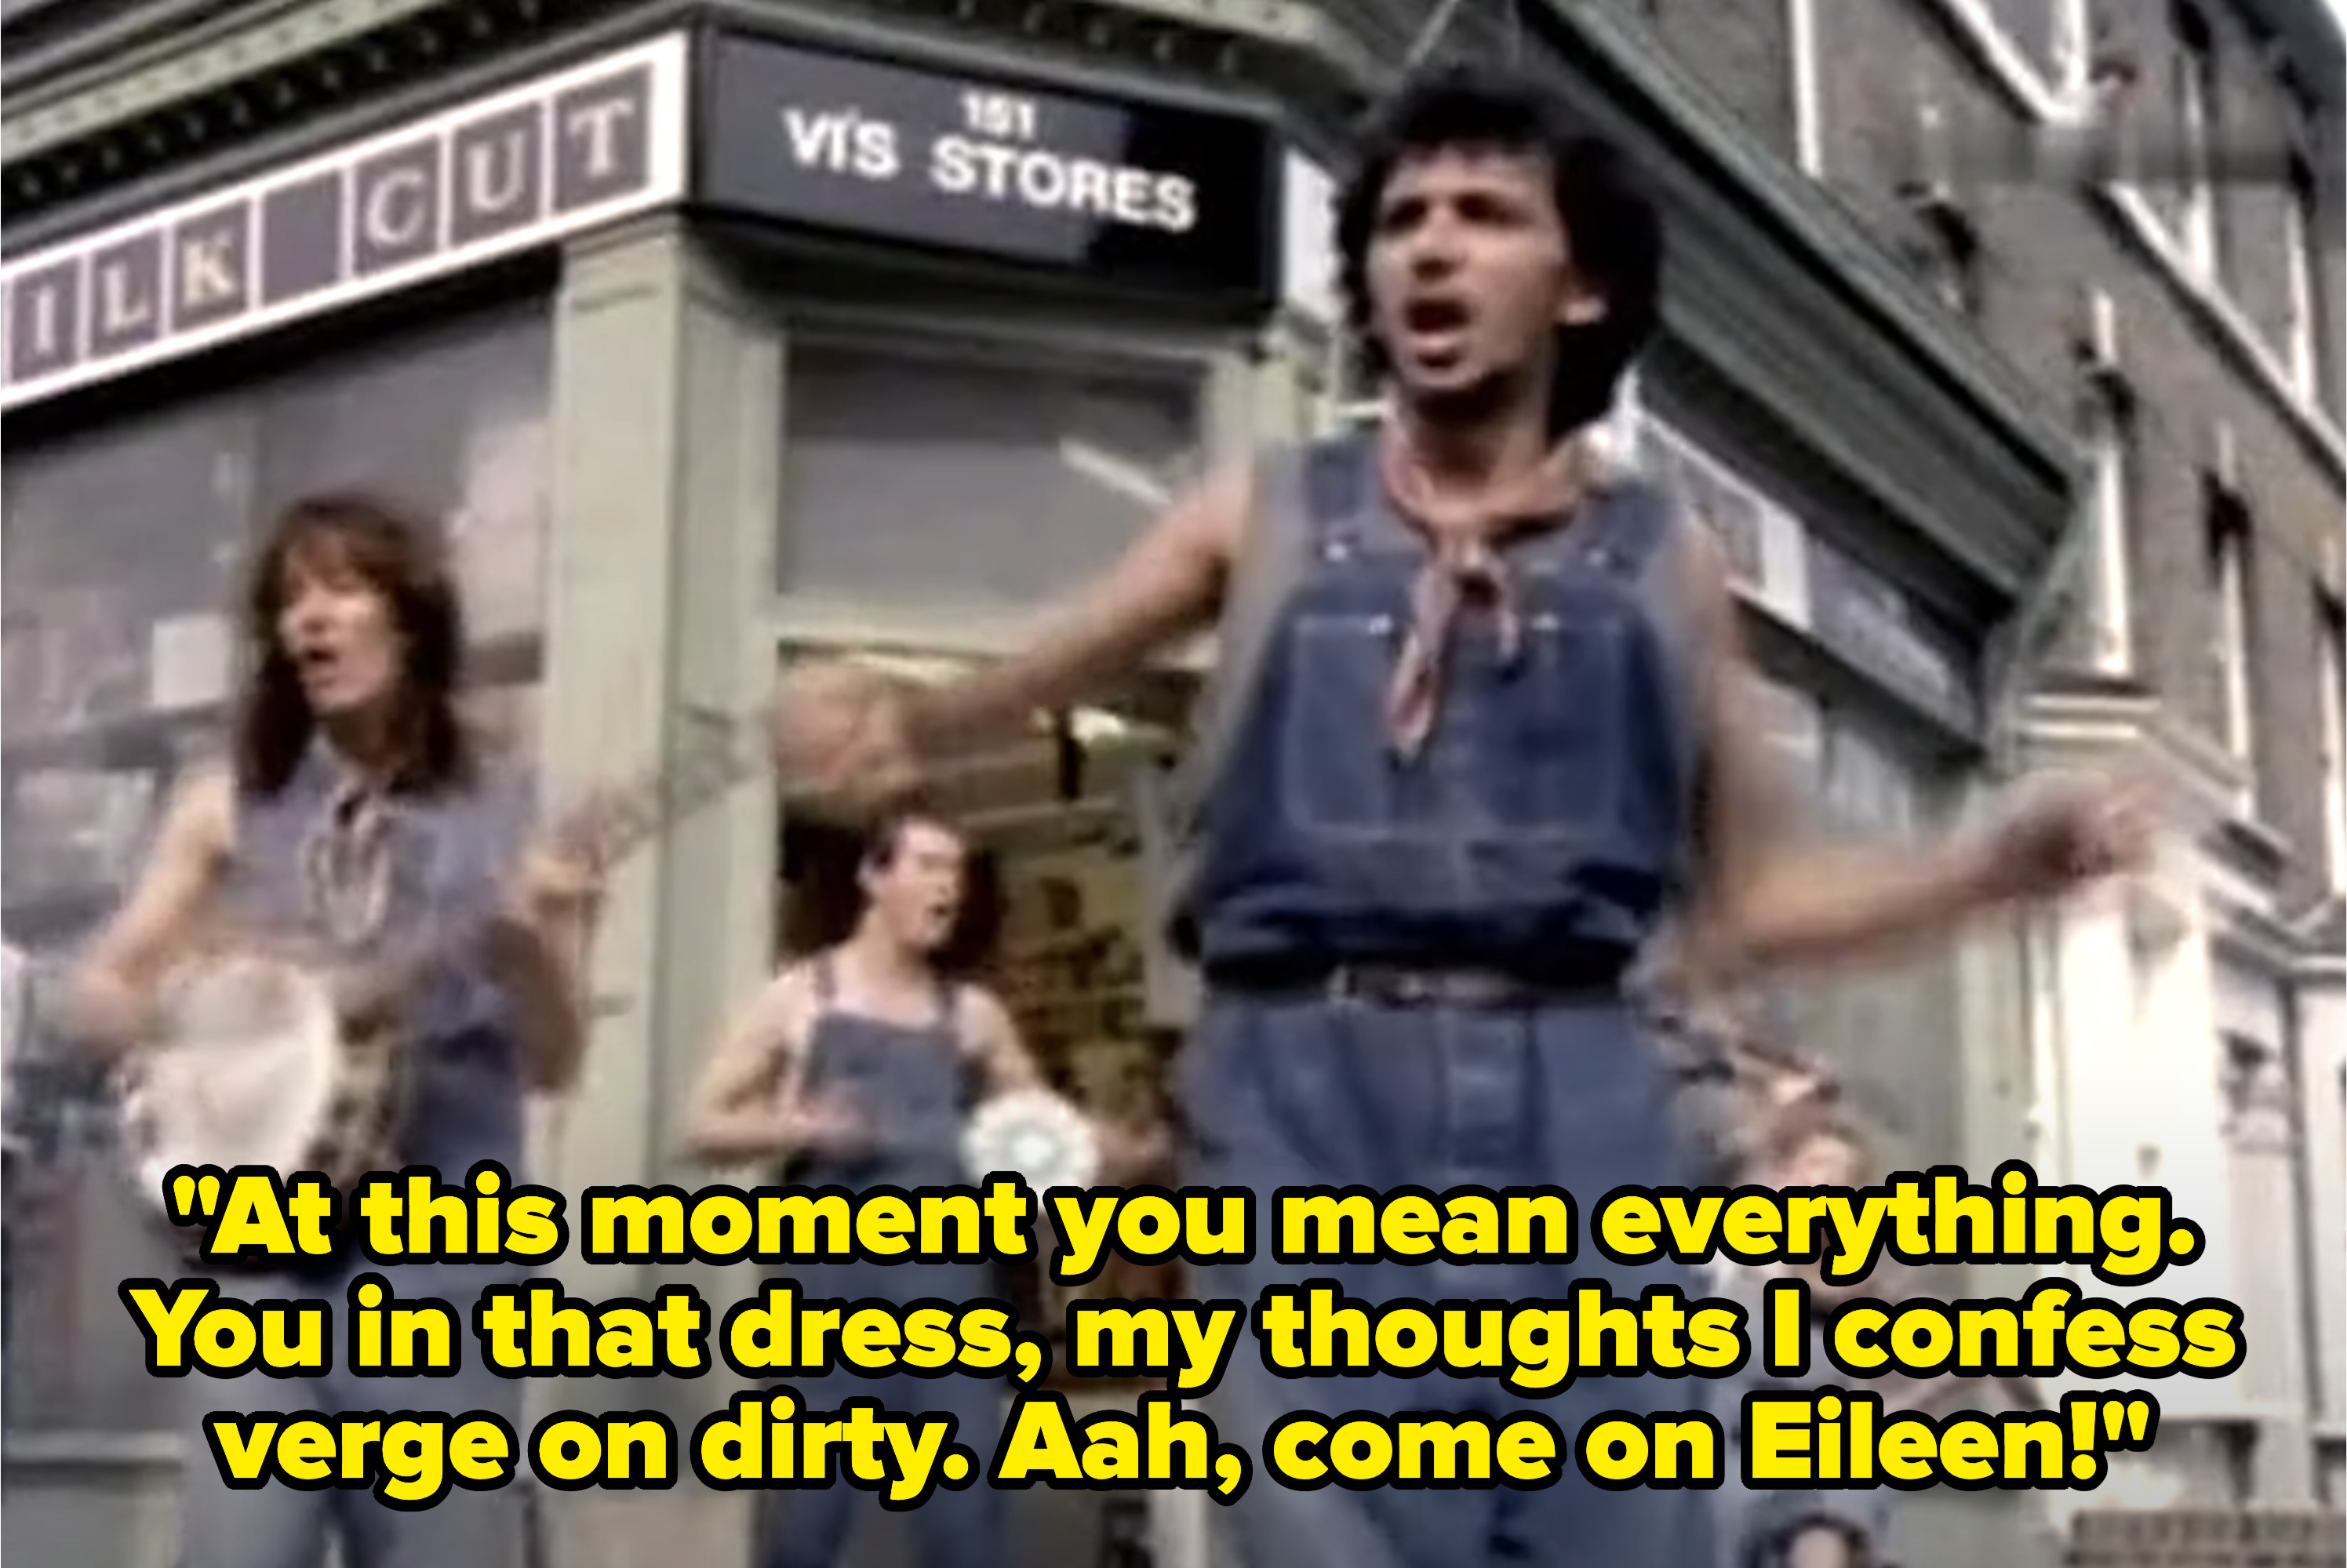 “快点Eileen"音乐视频歌词,“此刻你意味着一切。你穿那件衣服,我的想法我承认在肮脏的边缘。啊,拜托Eileen"